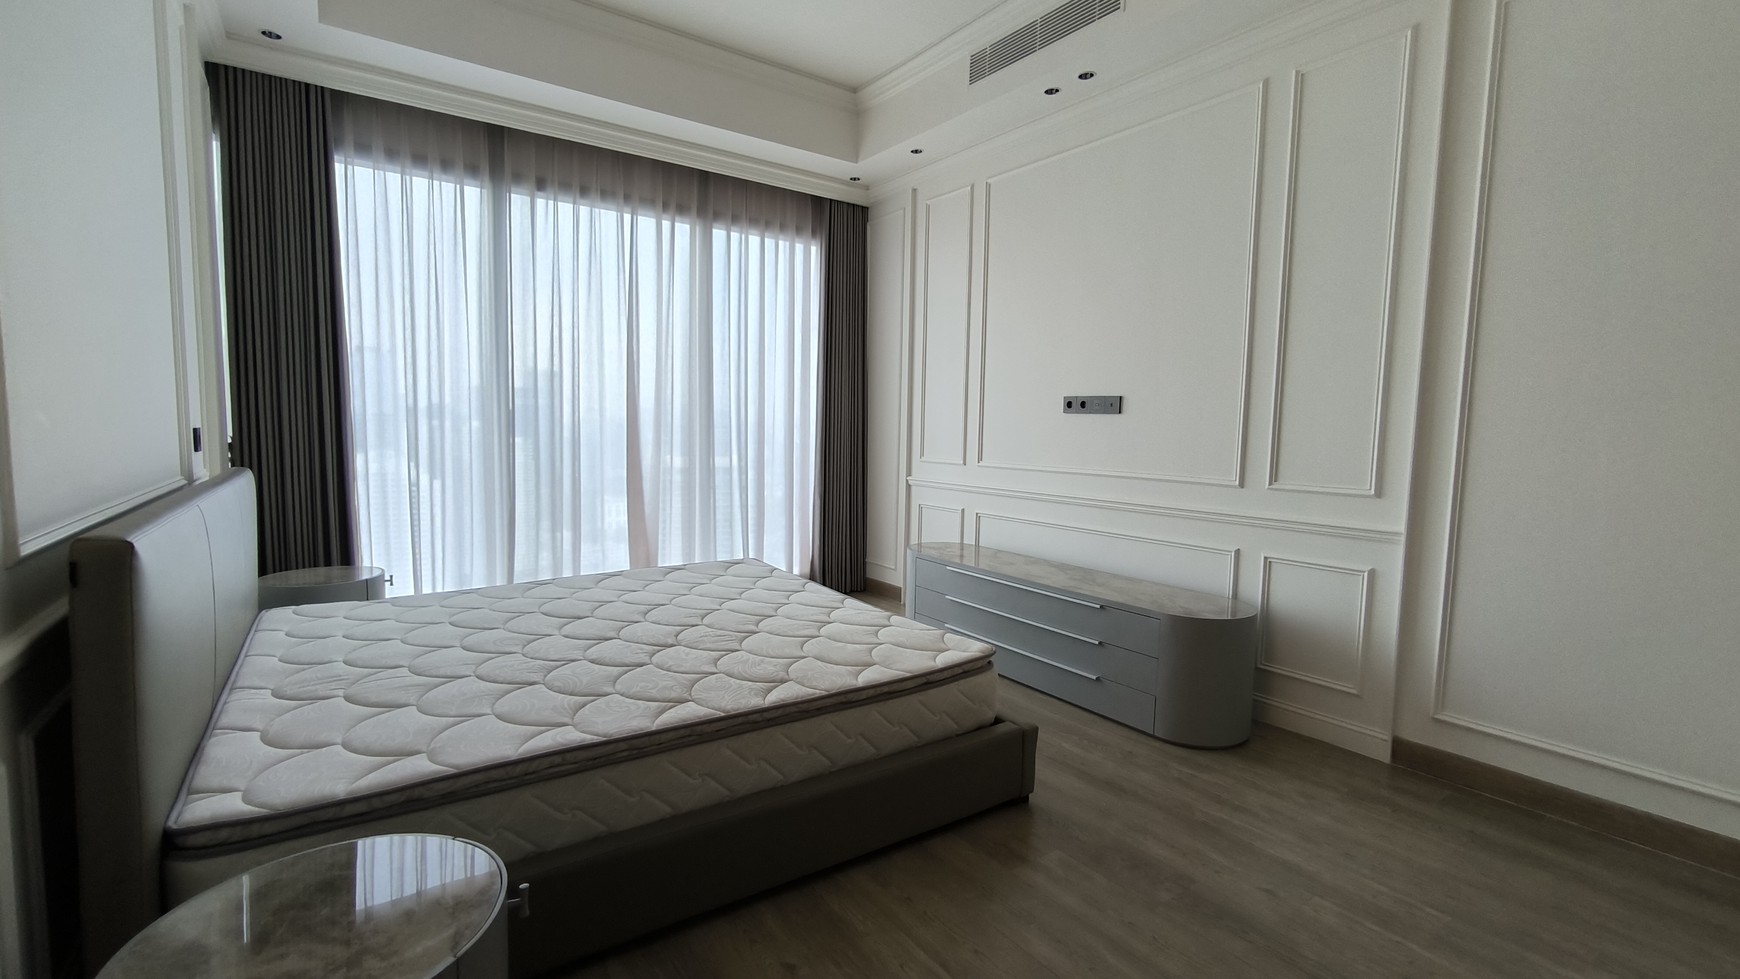 Apartement 57 Promenade - Hunian Exclusive - Lokasi Strategis di Pusat Bisnis Jakarta - Disewakan Furnished